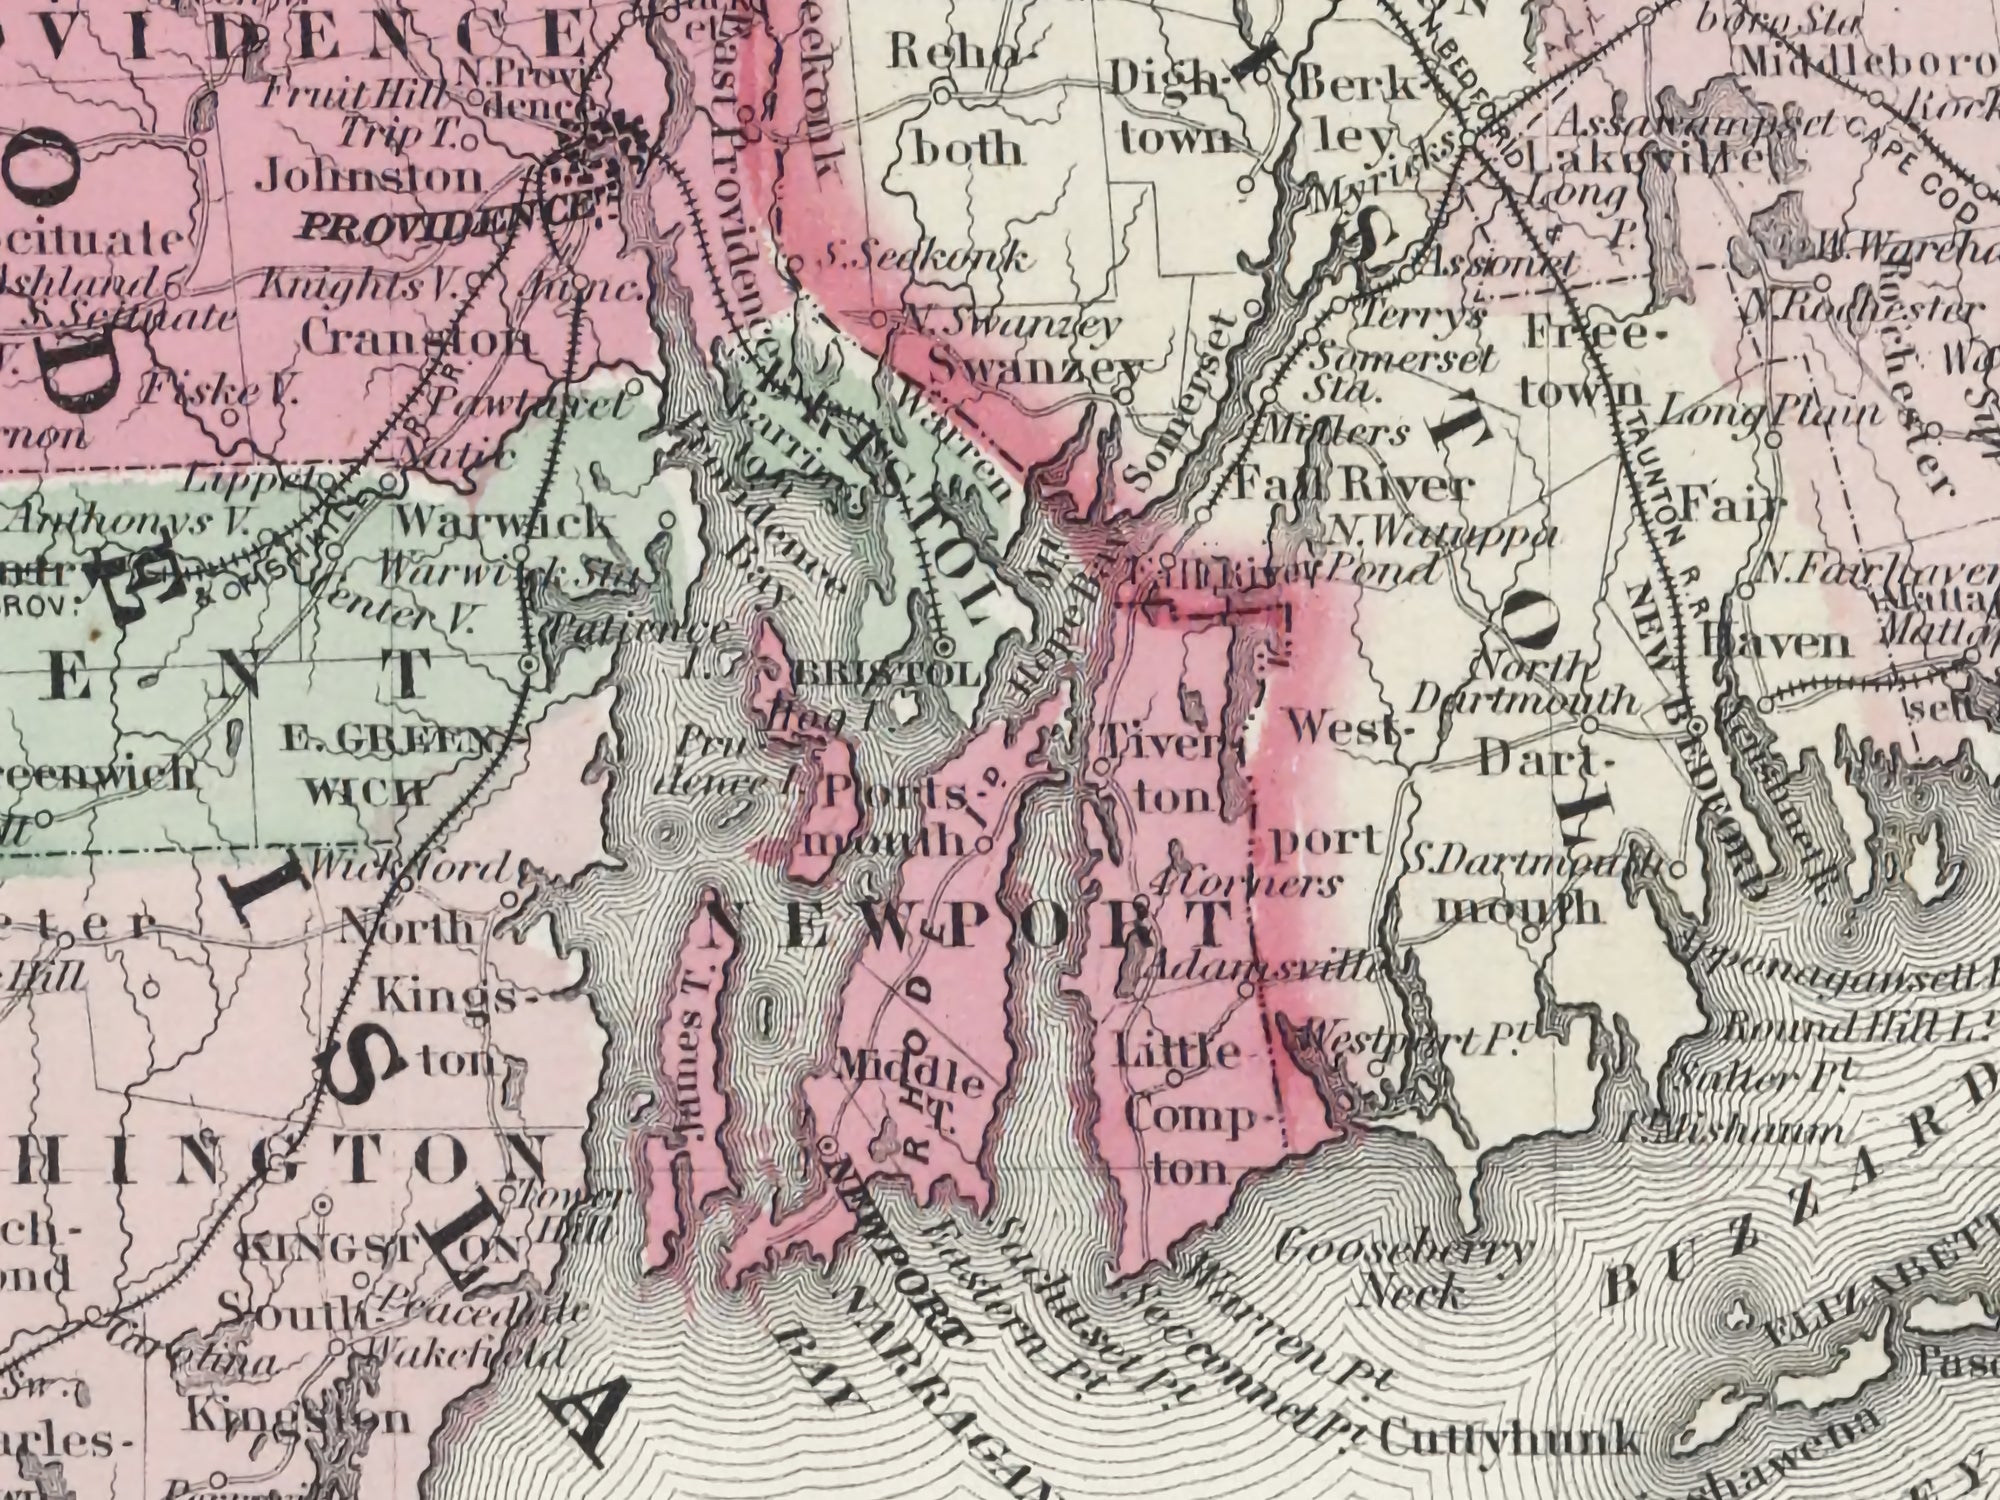 old map of massachusetts